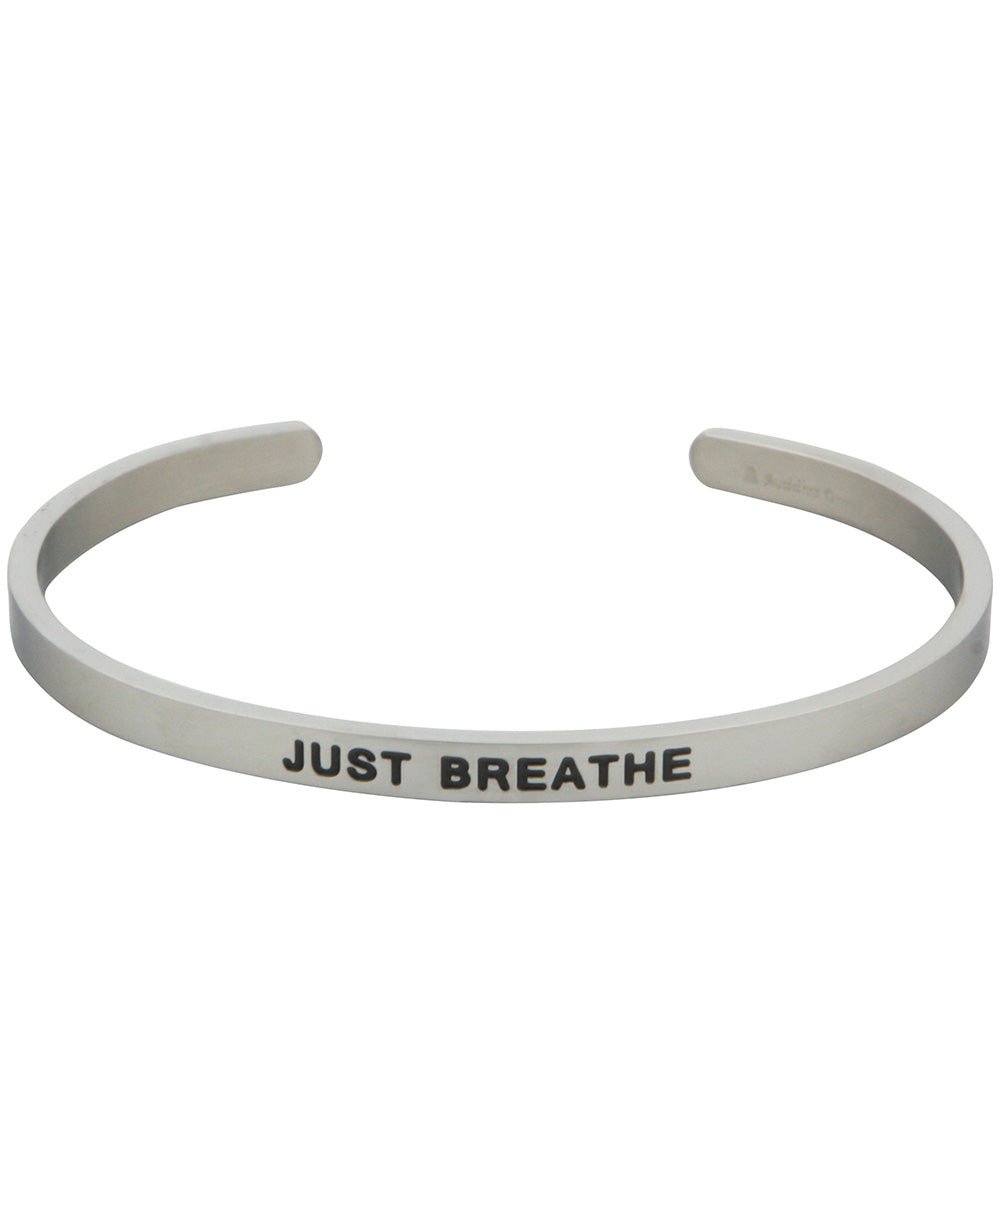 Inspirational Cuff Bracelet, Just Breathe - Bracelets